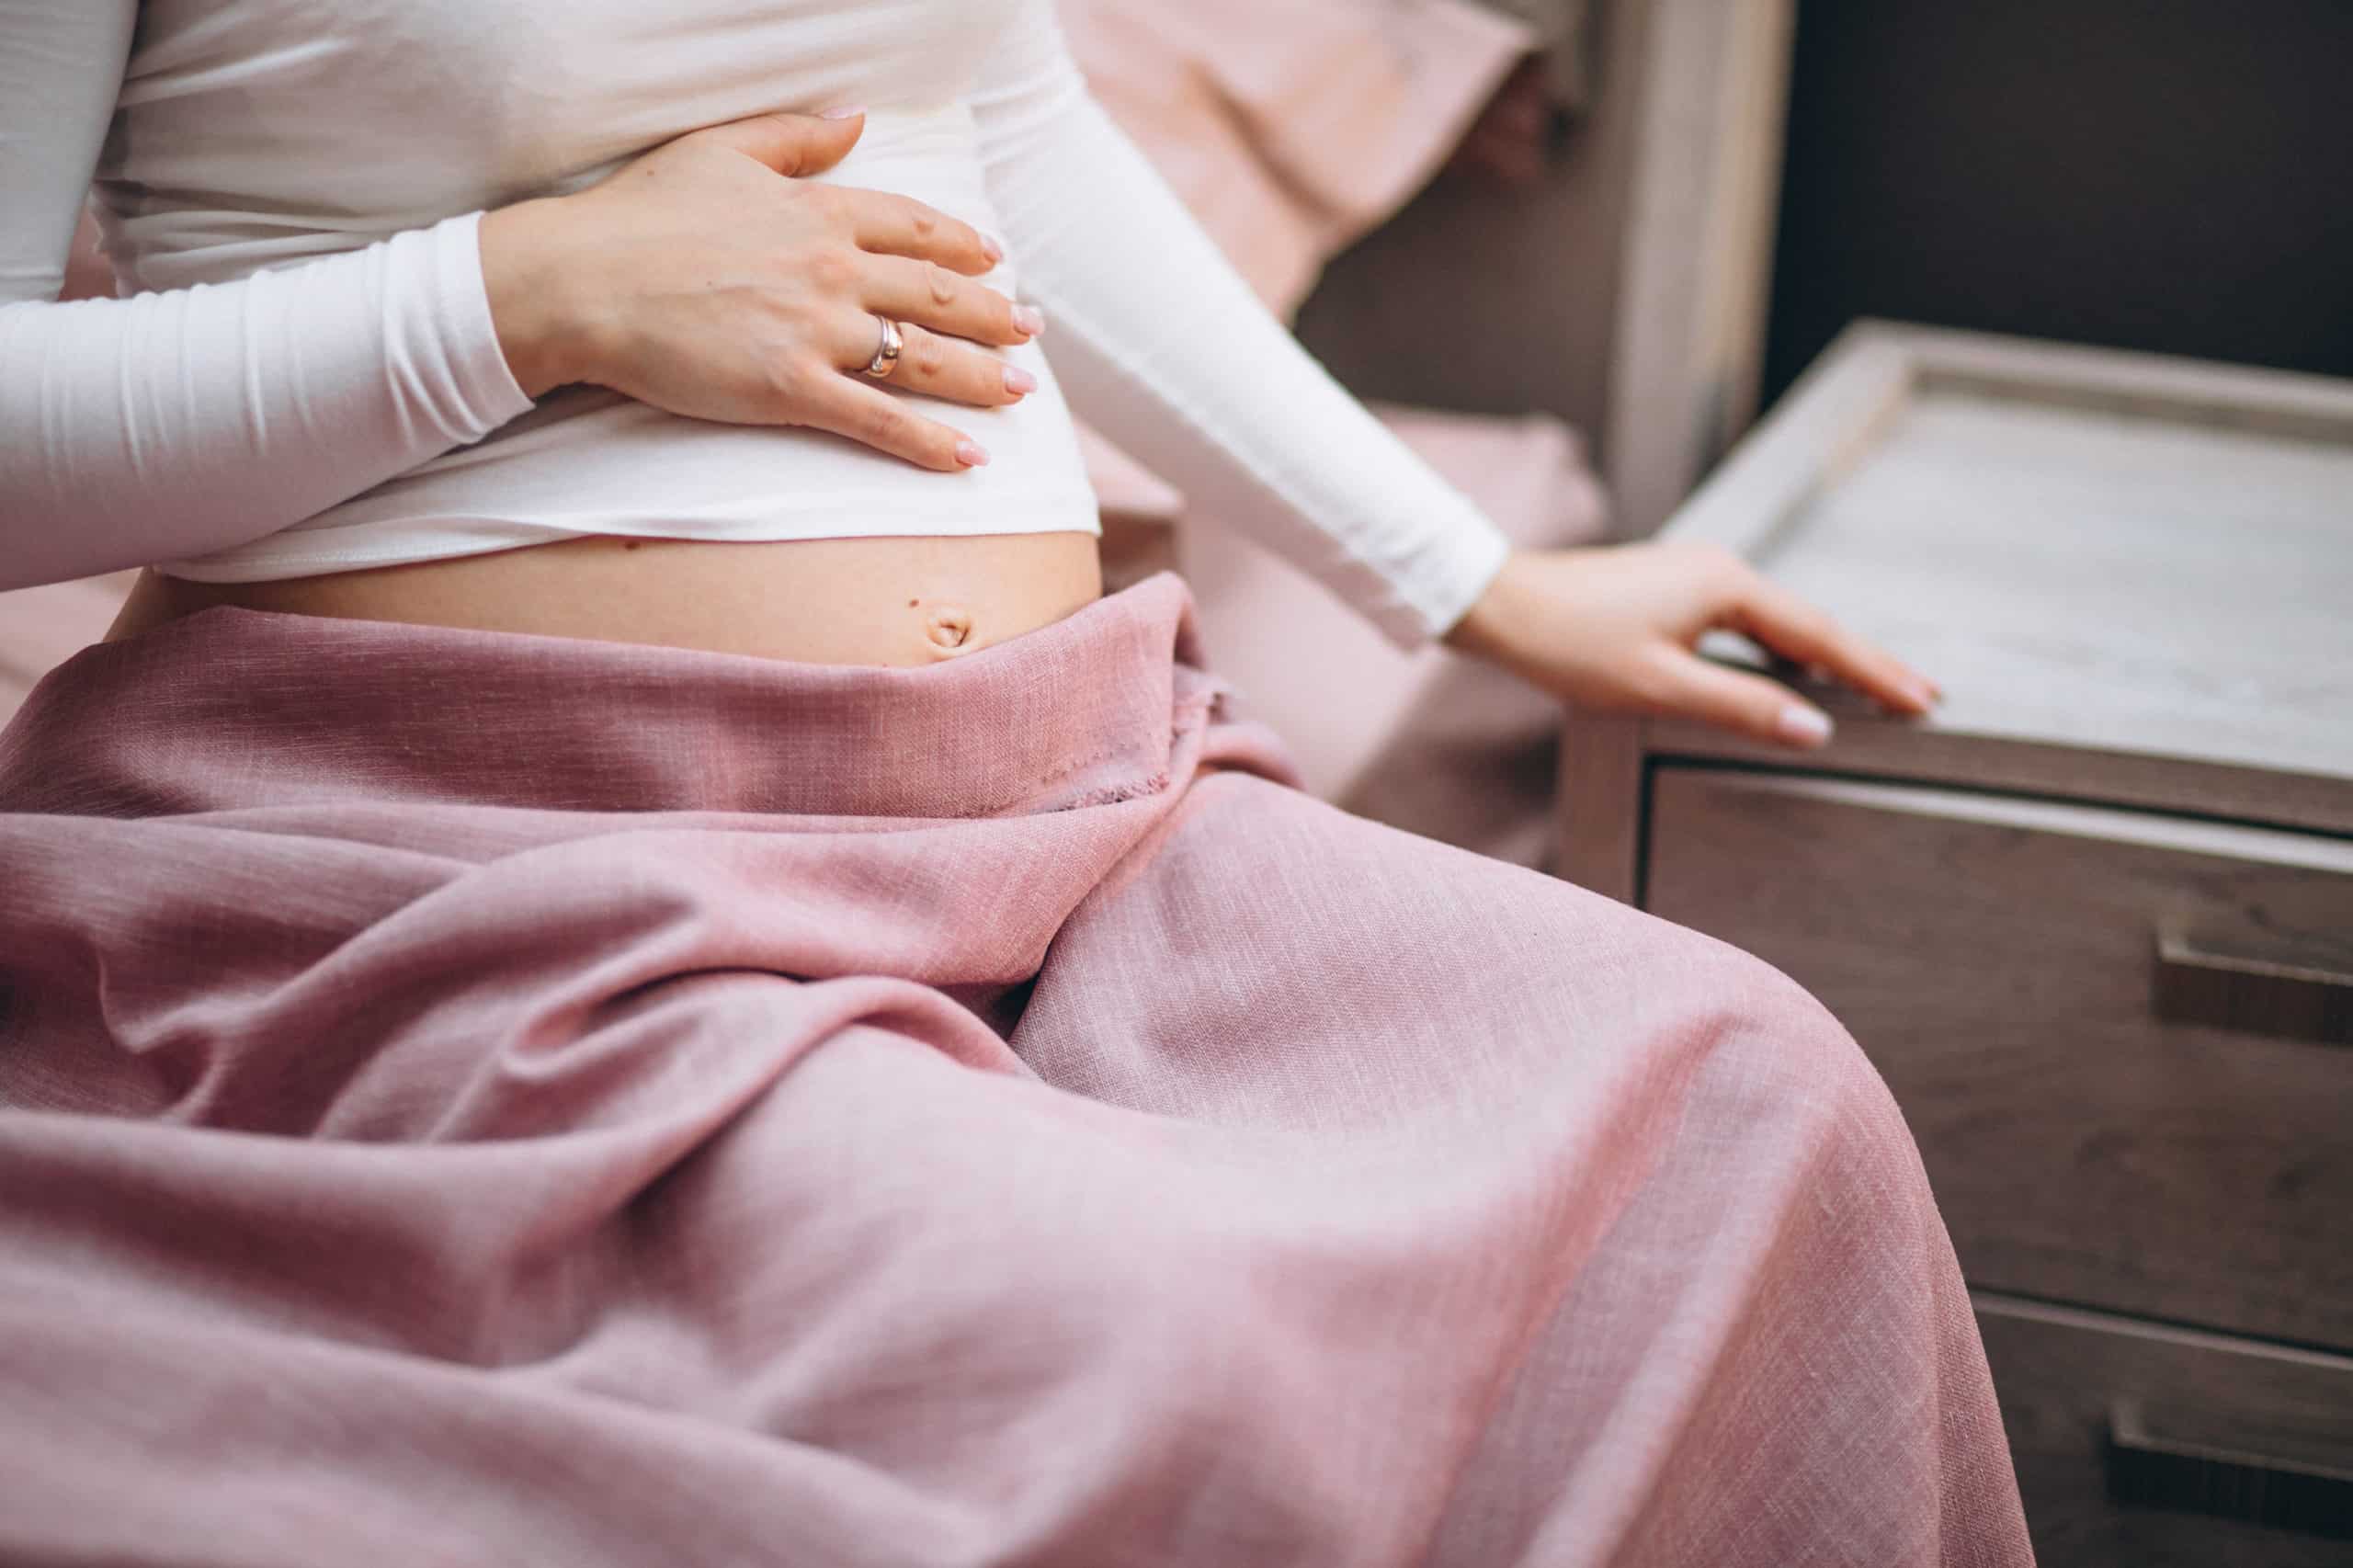 5 Sinais que te indicam que podes estar grávida